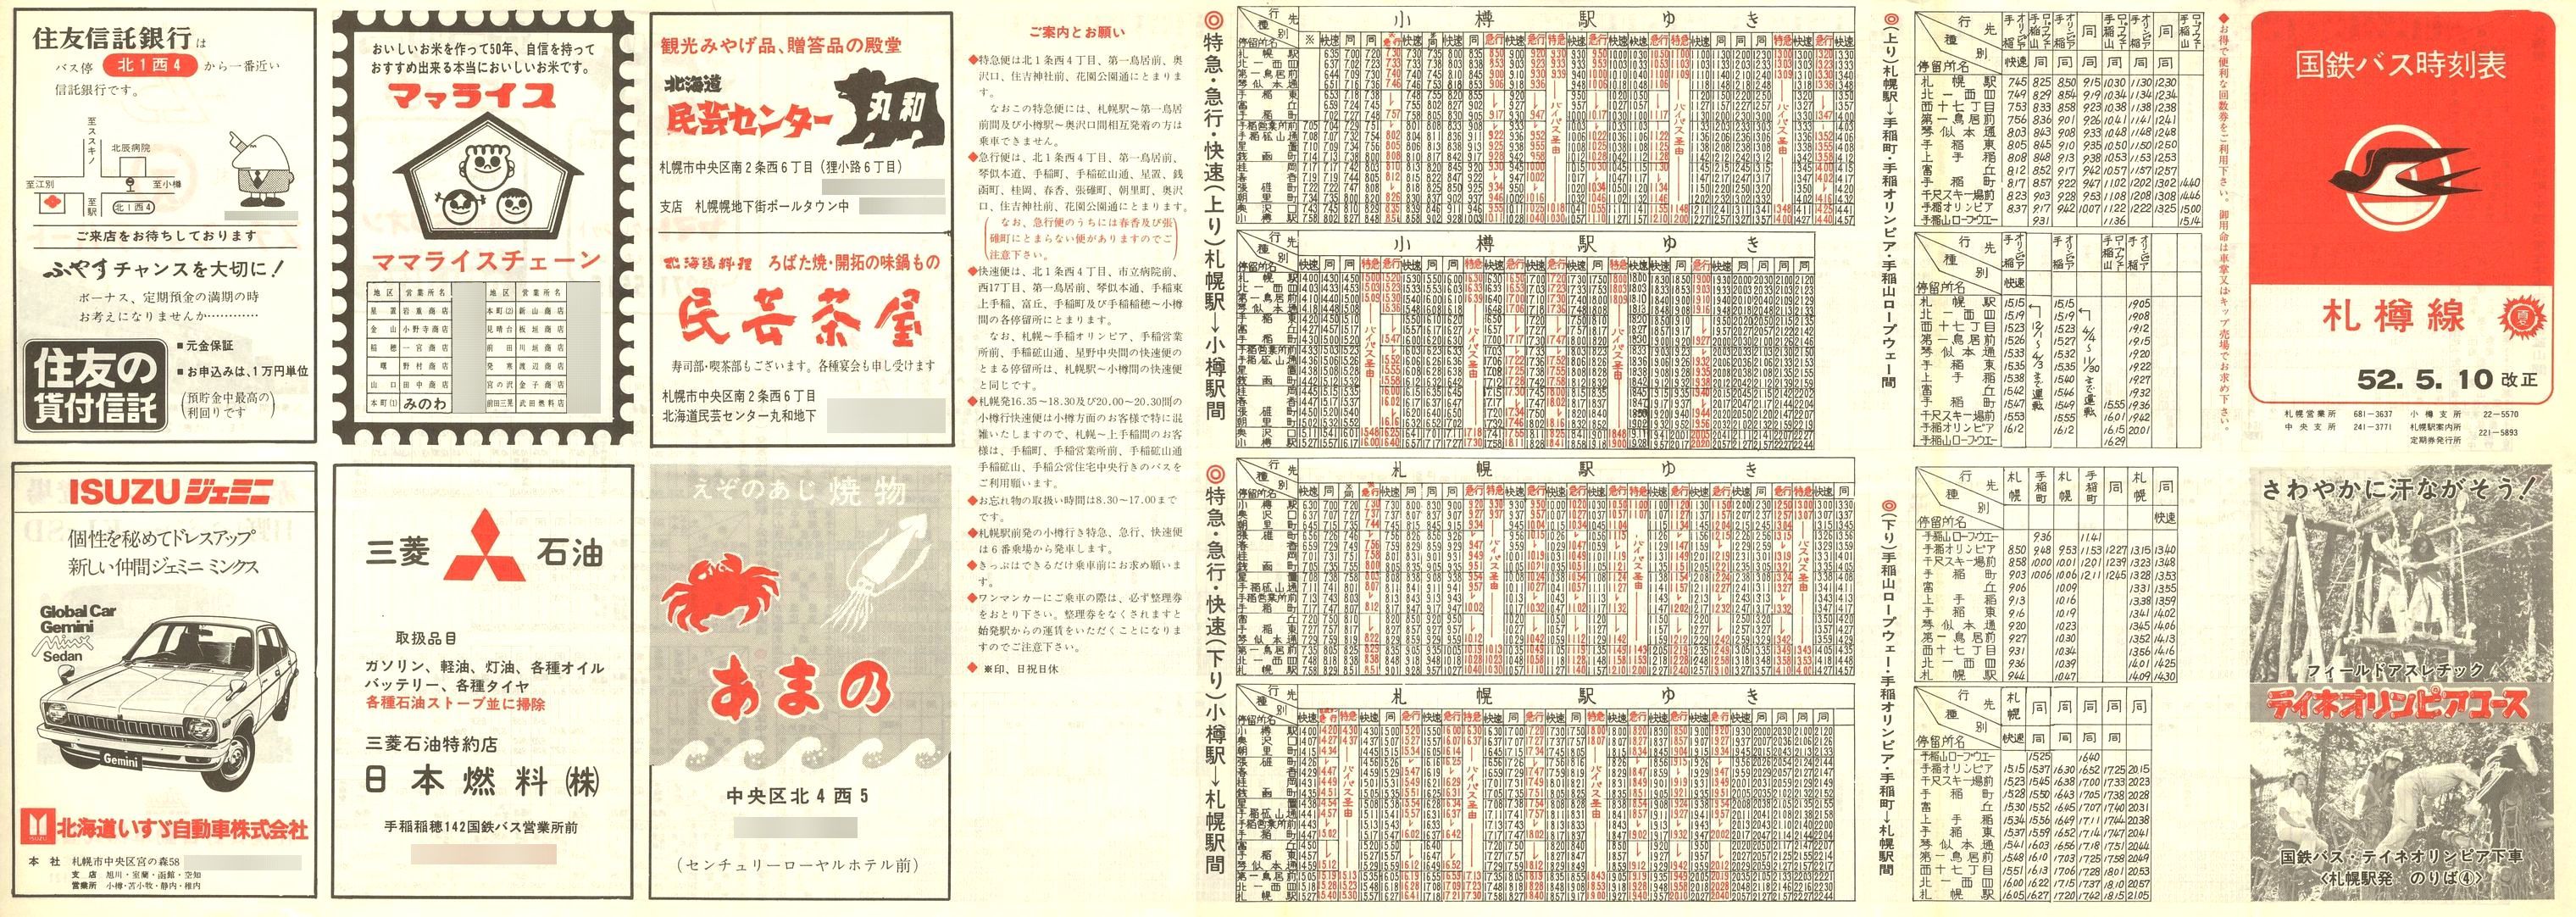 1977-05-10改正_国鉄バス_札樽線時刻表表面